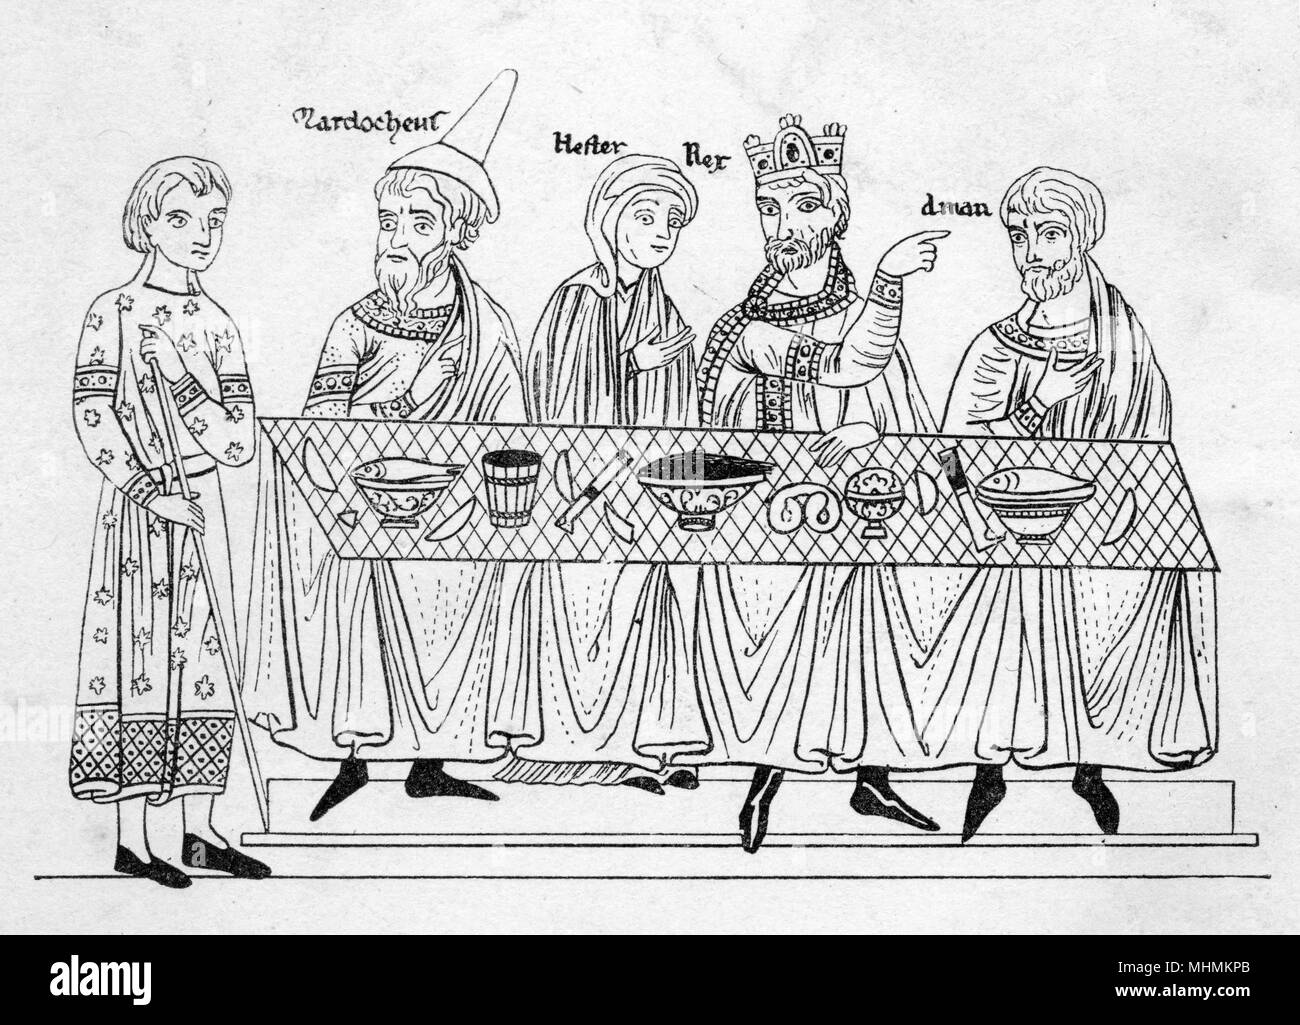 Una representación estilizada de un banquete medieval. Fecha: medieval Foto de stock